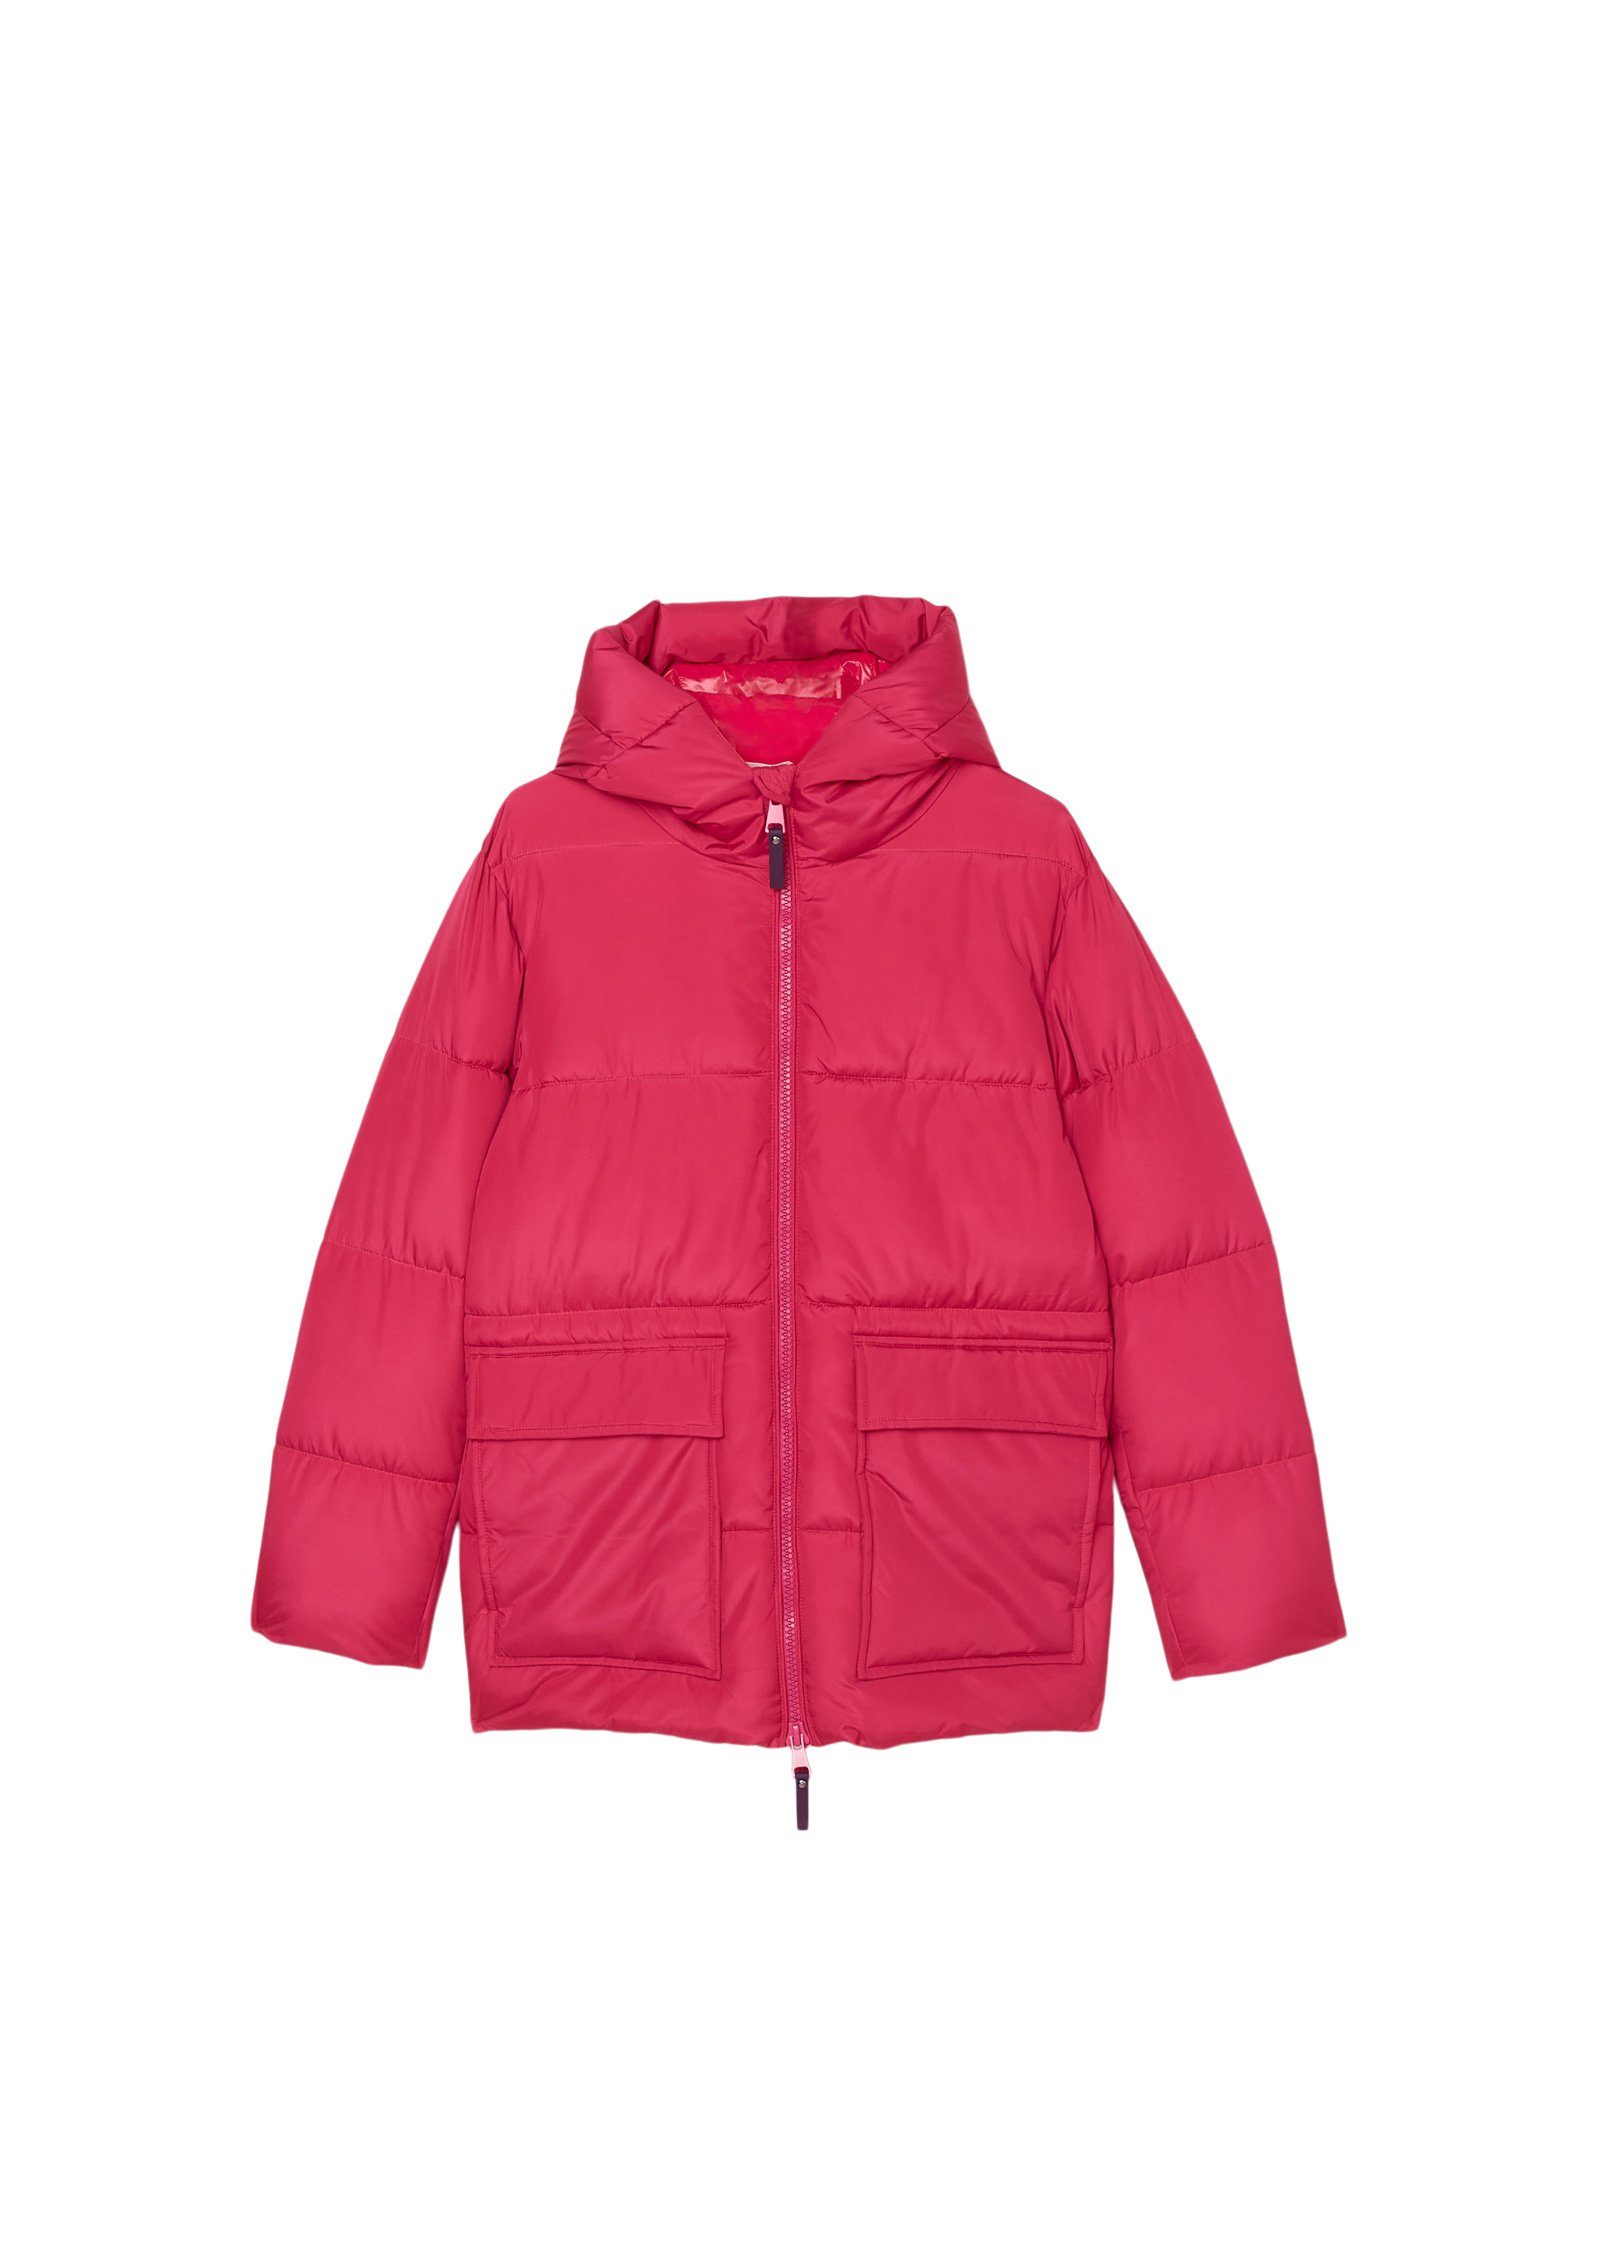 Marc O'Polo Outdoorjacke mit wasserabweisender Oberfläche pink | Jacken